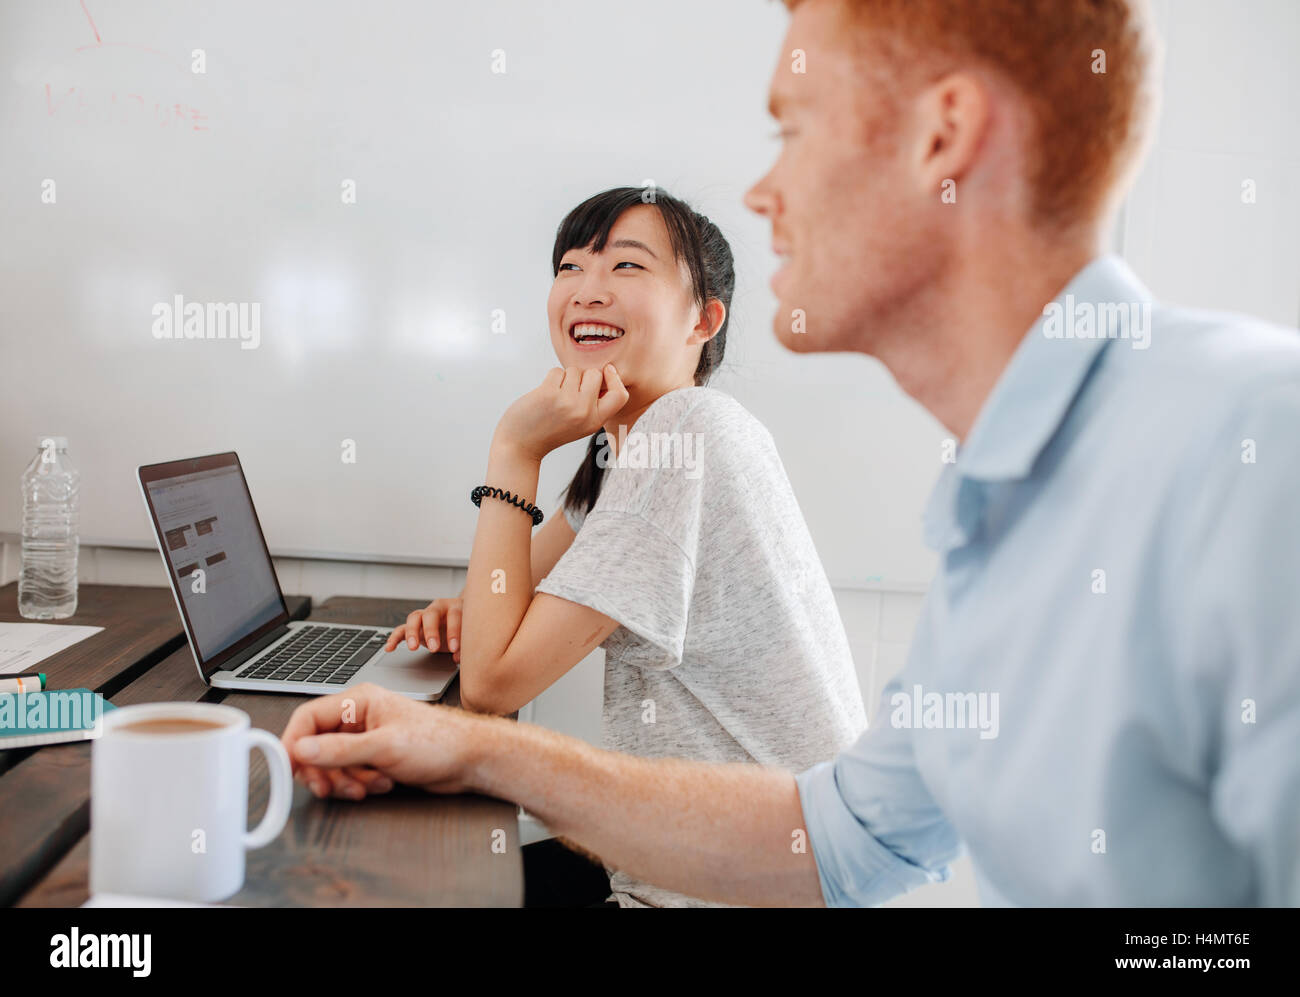 Zwei glückliche junge Geschäftsleute beim Business-Meeting am Konferenztisch sitzen. Mitarbeiter im Sitzungssaal mit Laptop sitzen Stockfoto